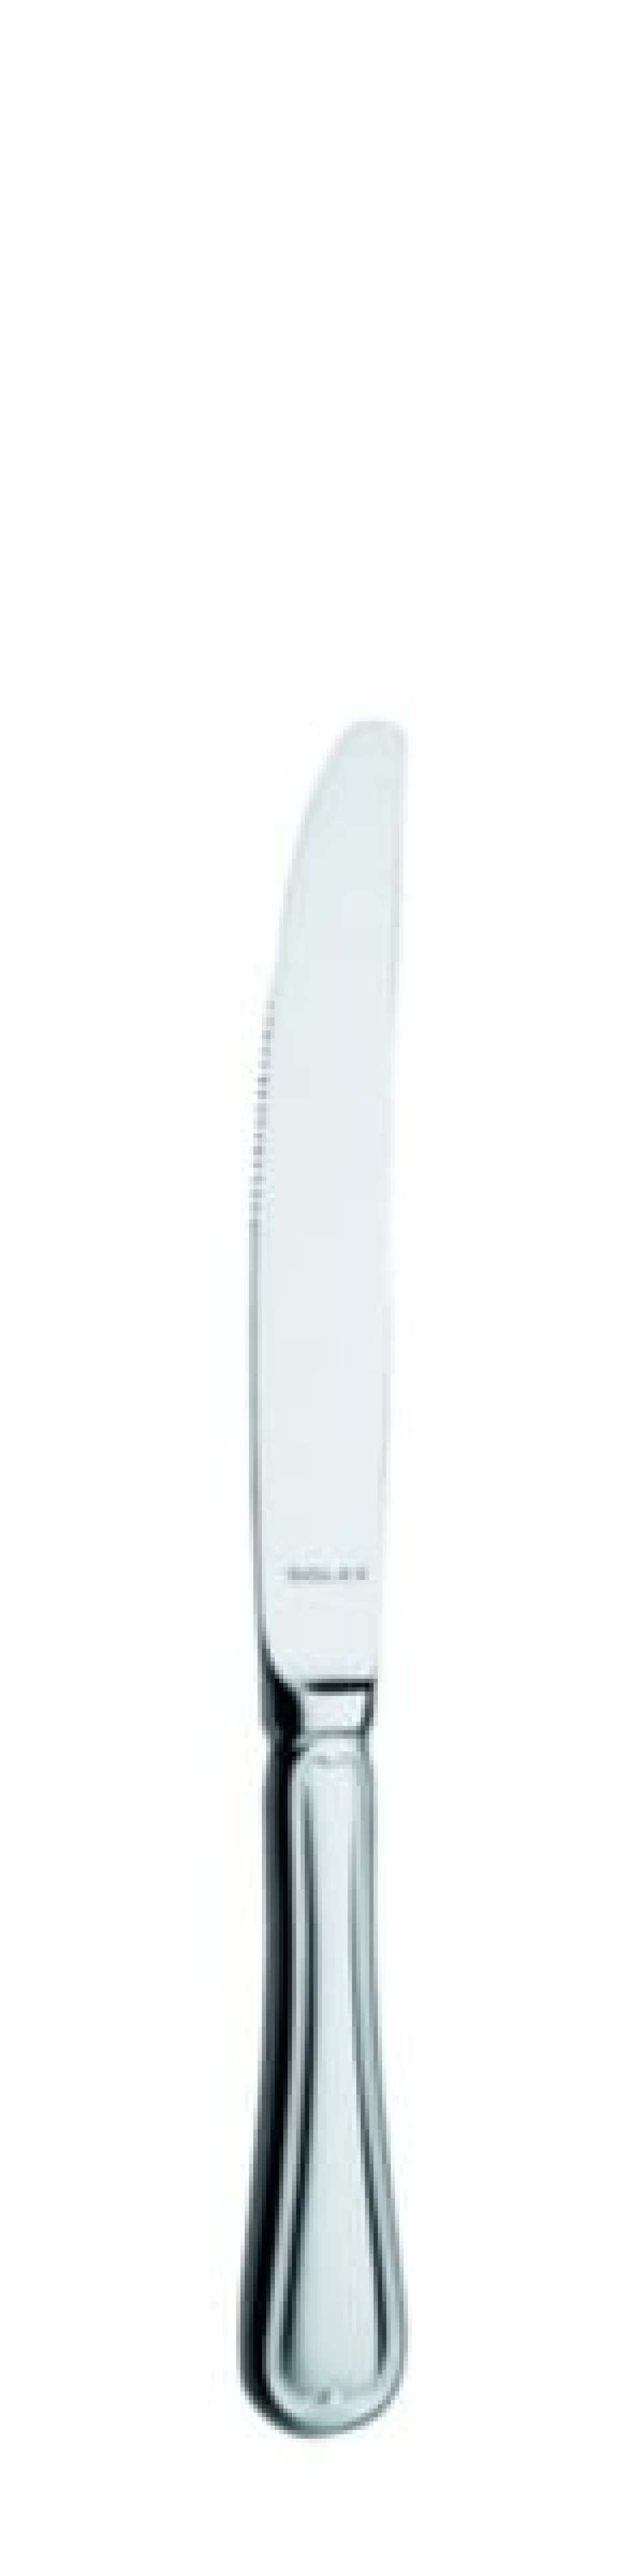 Laila Tafelmesser 213 mm - Solex in der Gruppe Tischgedeck / Besteck / Messer bei The Kitchen Lab (1284-21528)